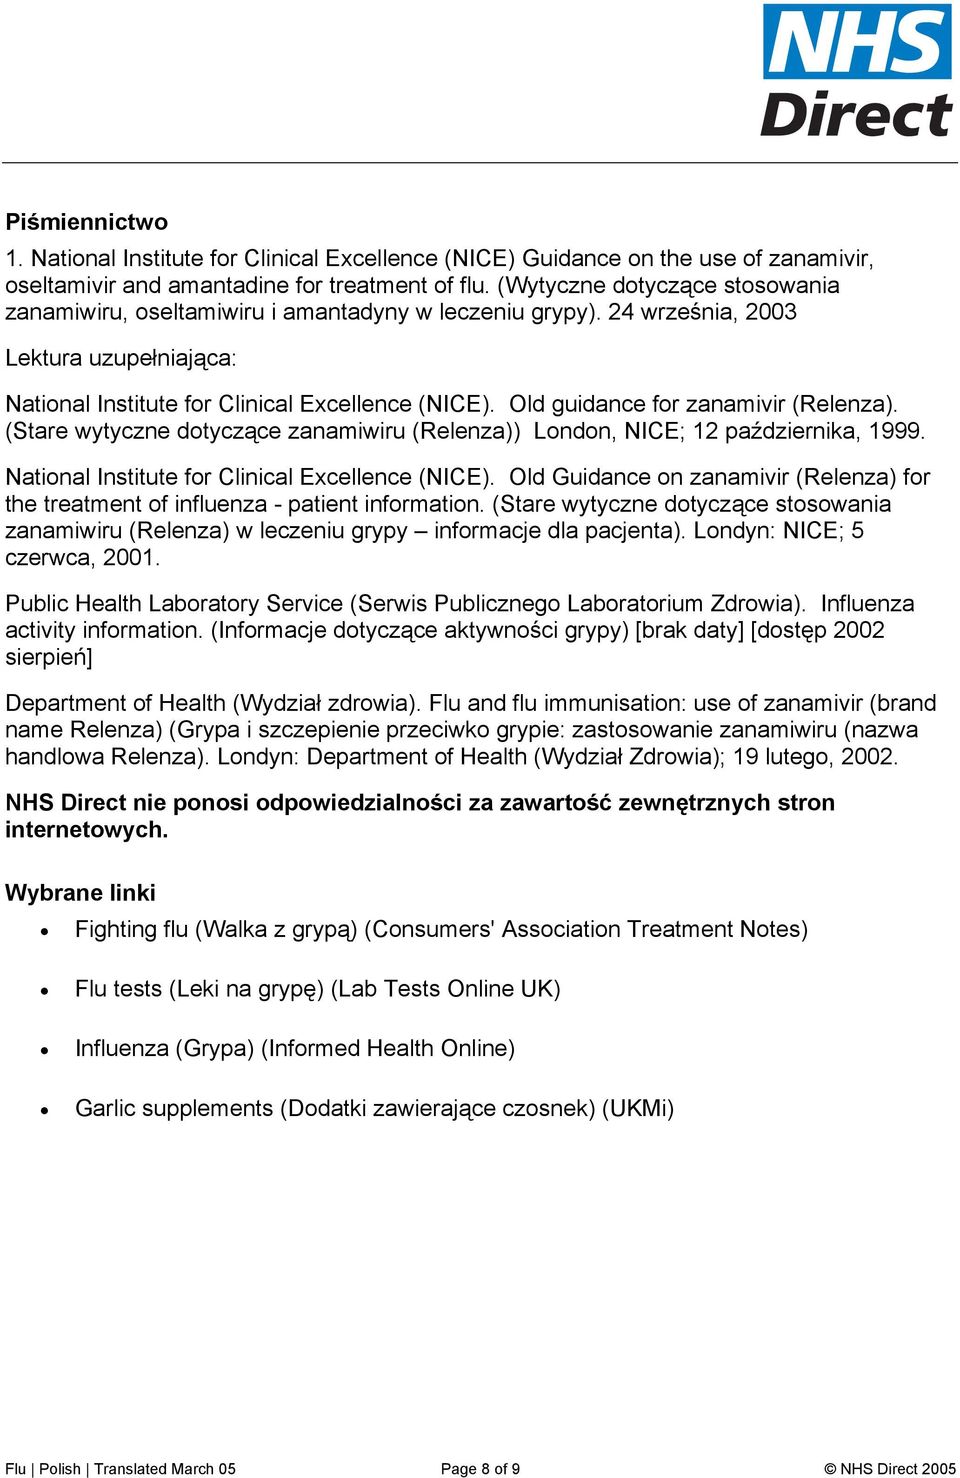 Old guidance for zanamivir (Relenza). (Stare wytyczne dotyczące zanamiwiru (Relenza)) London, NICE; 12 października, 1999. National Institute for Clinical Excellence (NICE).